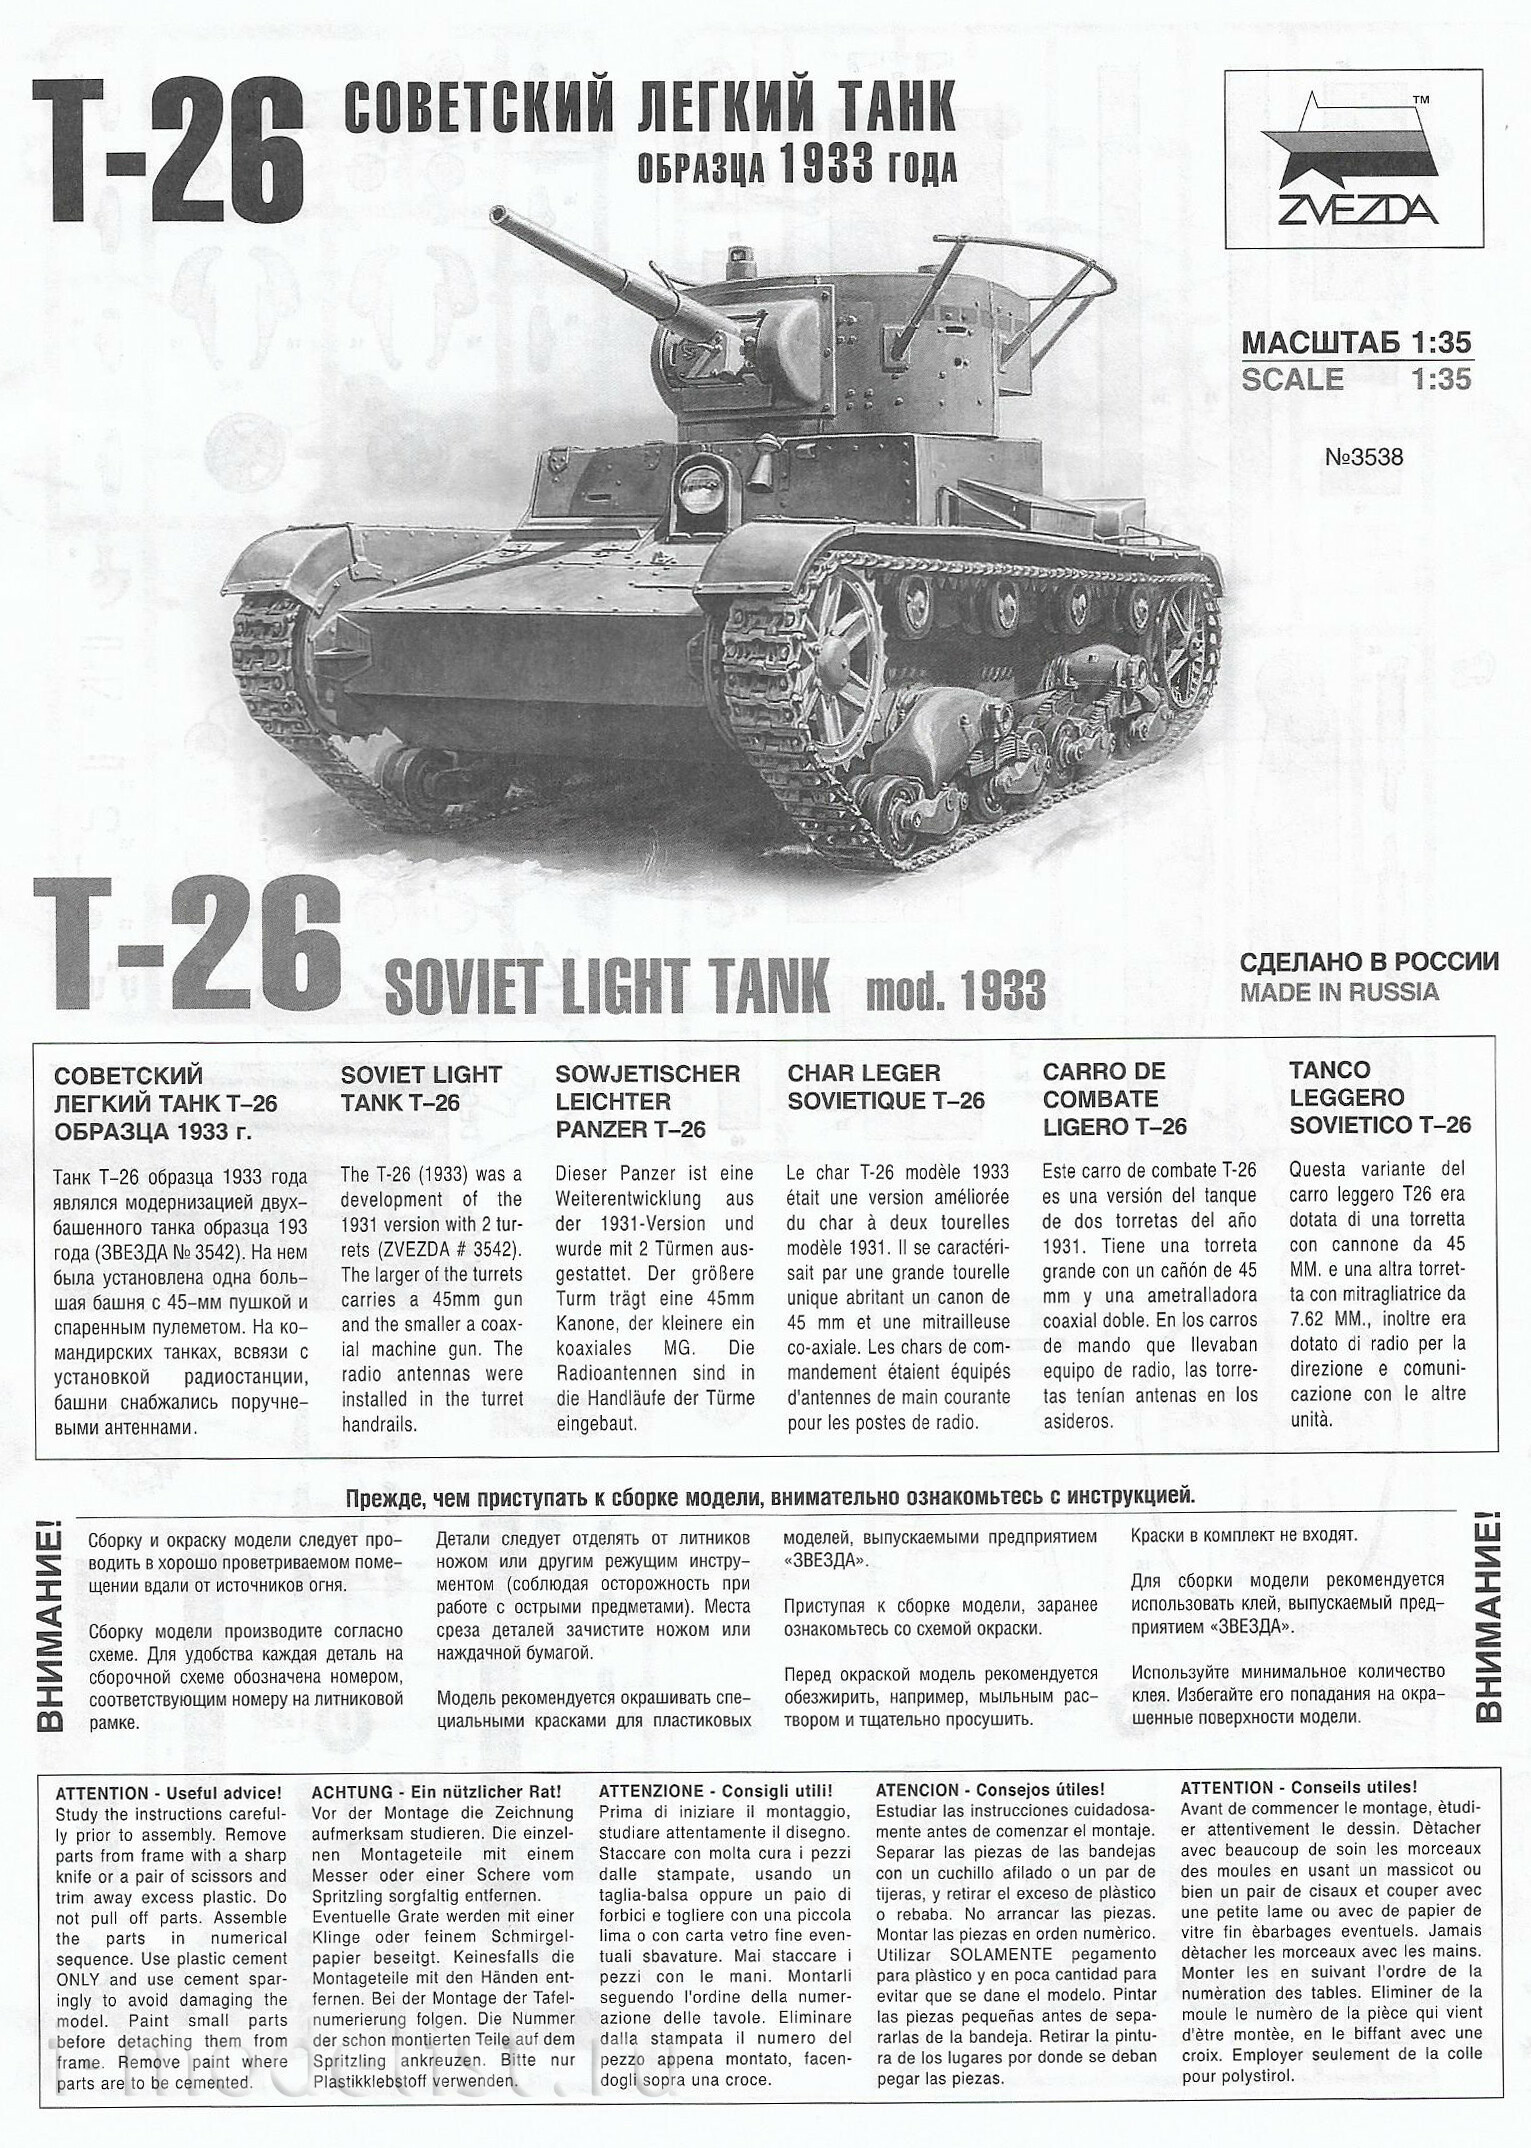 1/35 Zvezda 3538 Soviet light tank T-26 mod. 1933.